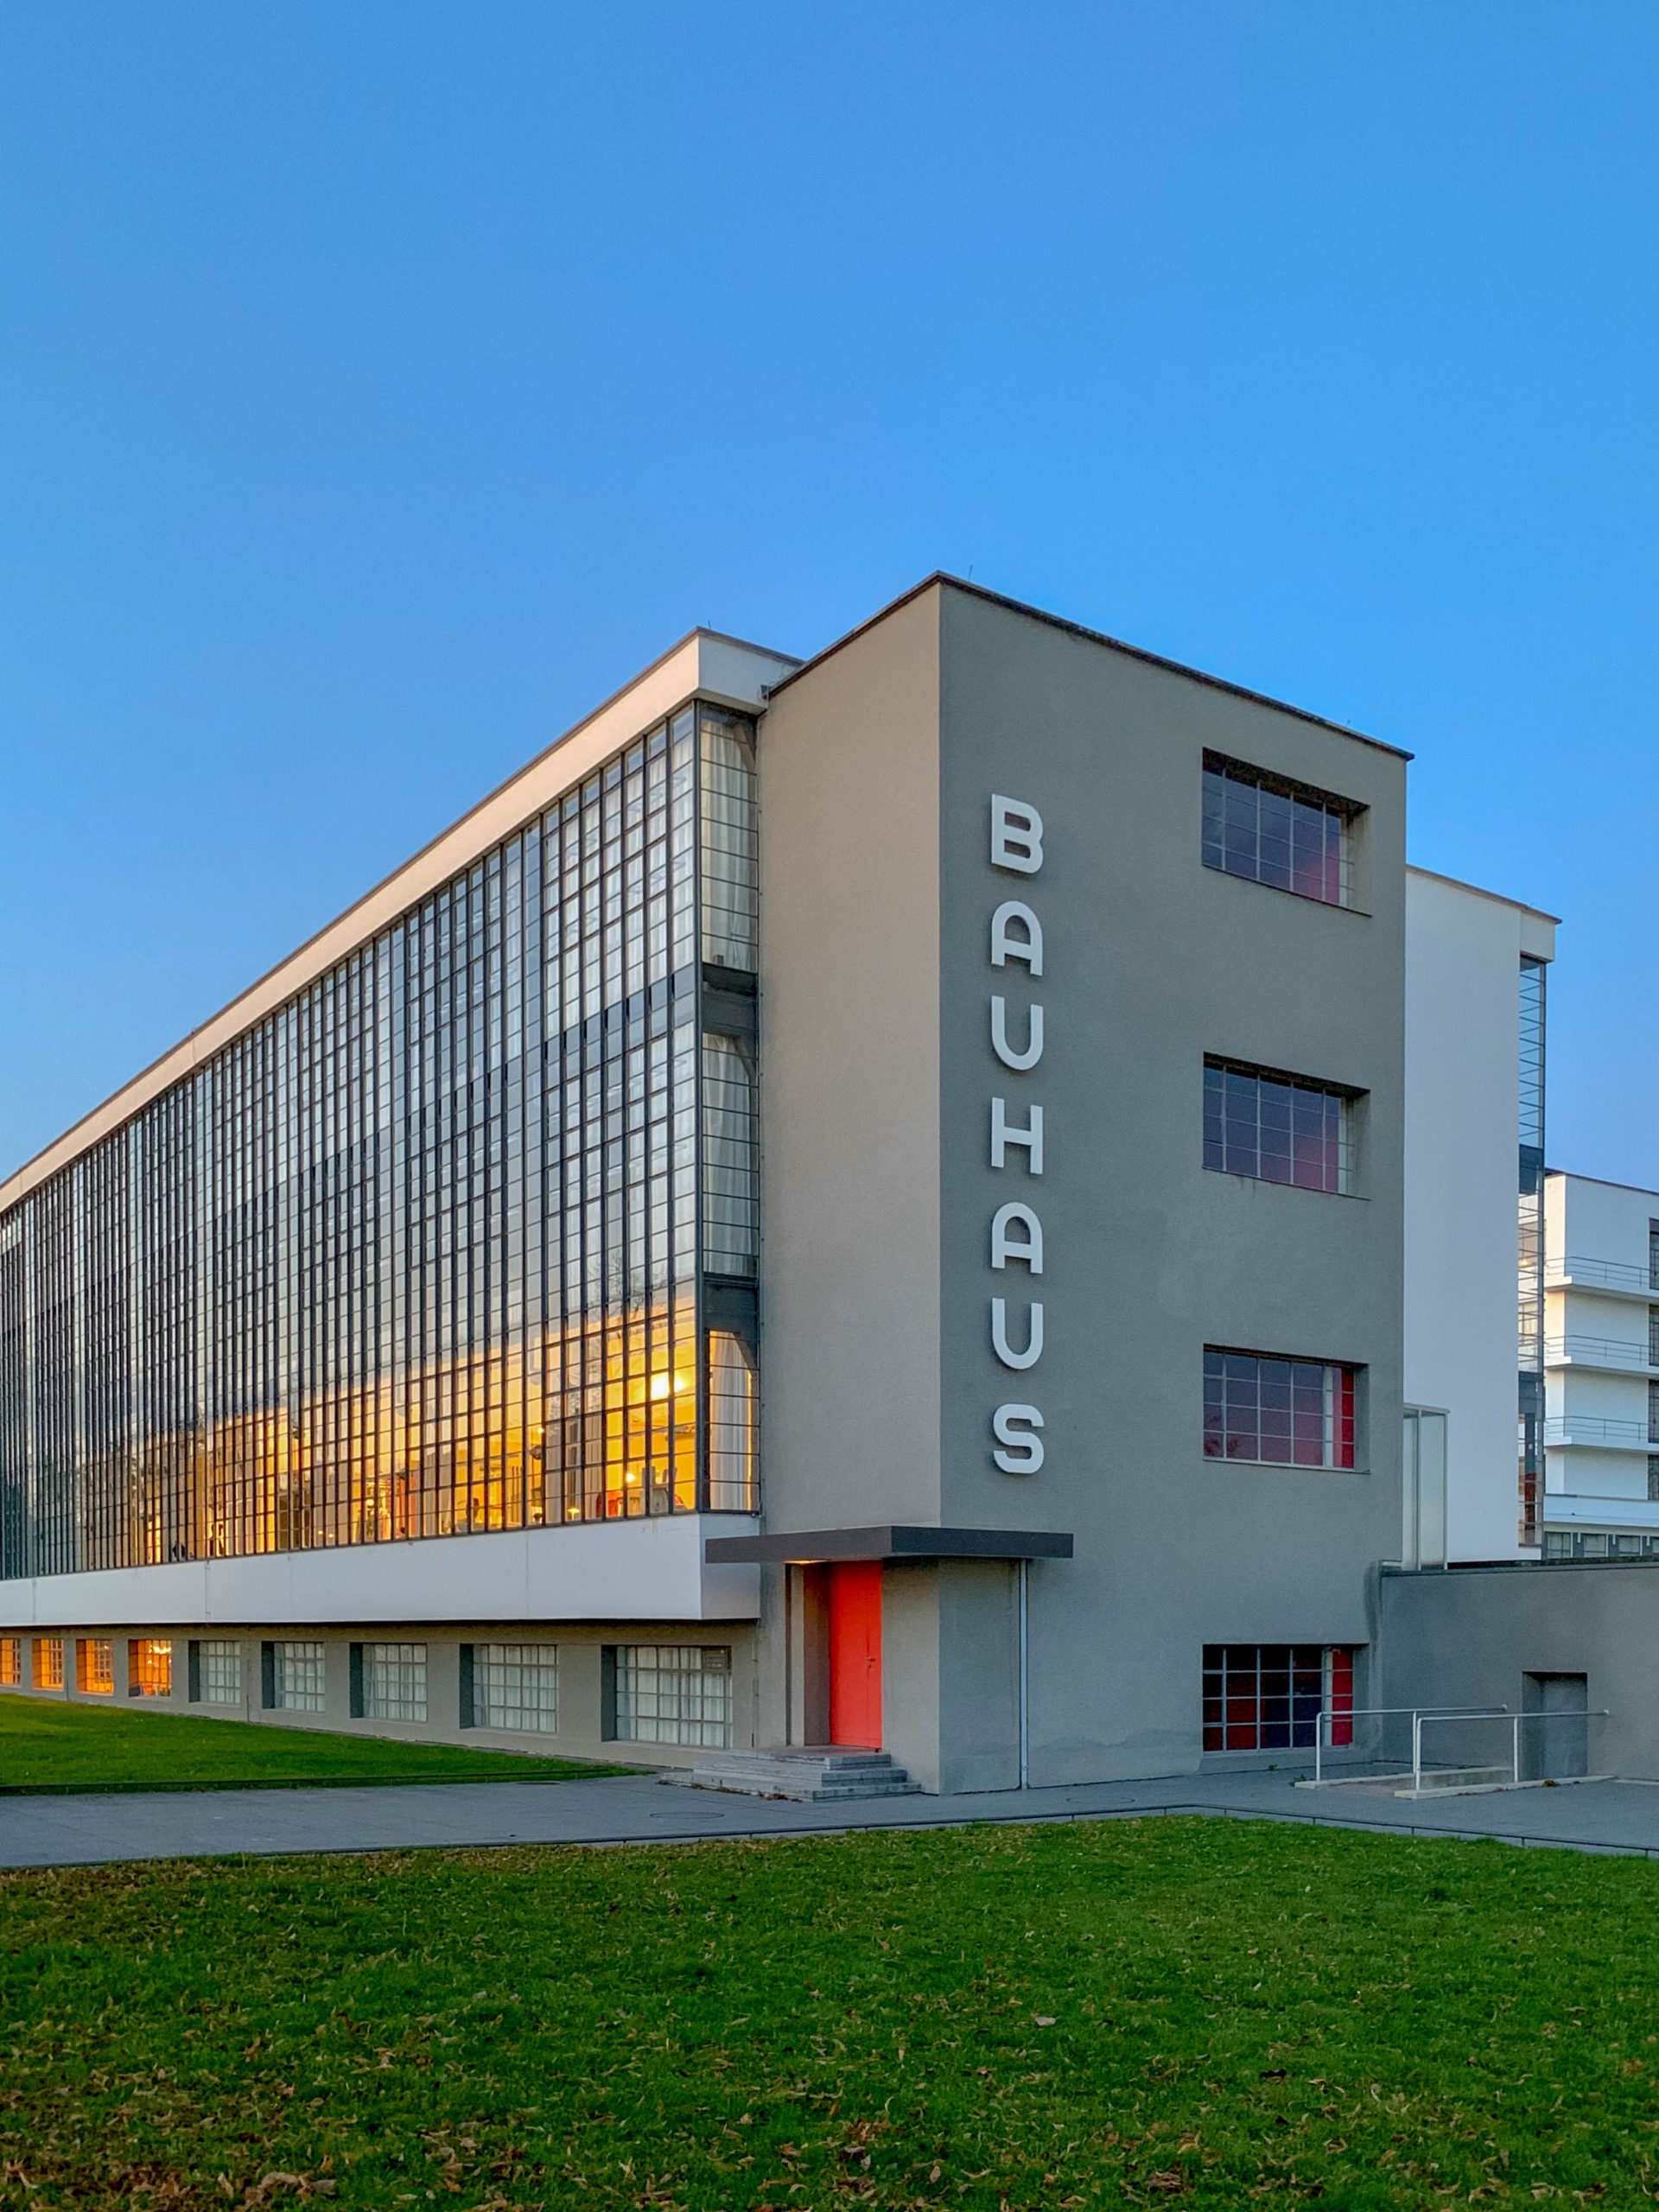 Bauhausgebäude, 1925-1926. Architekt: Walter Gropius. Foto: Daniela Christmann